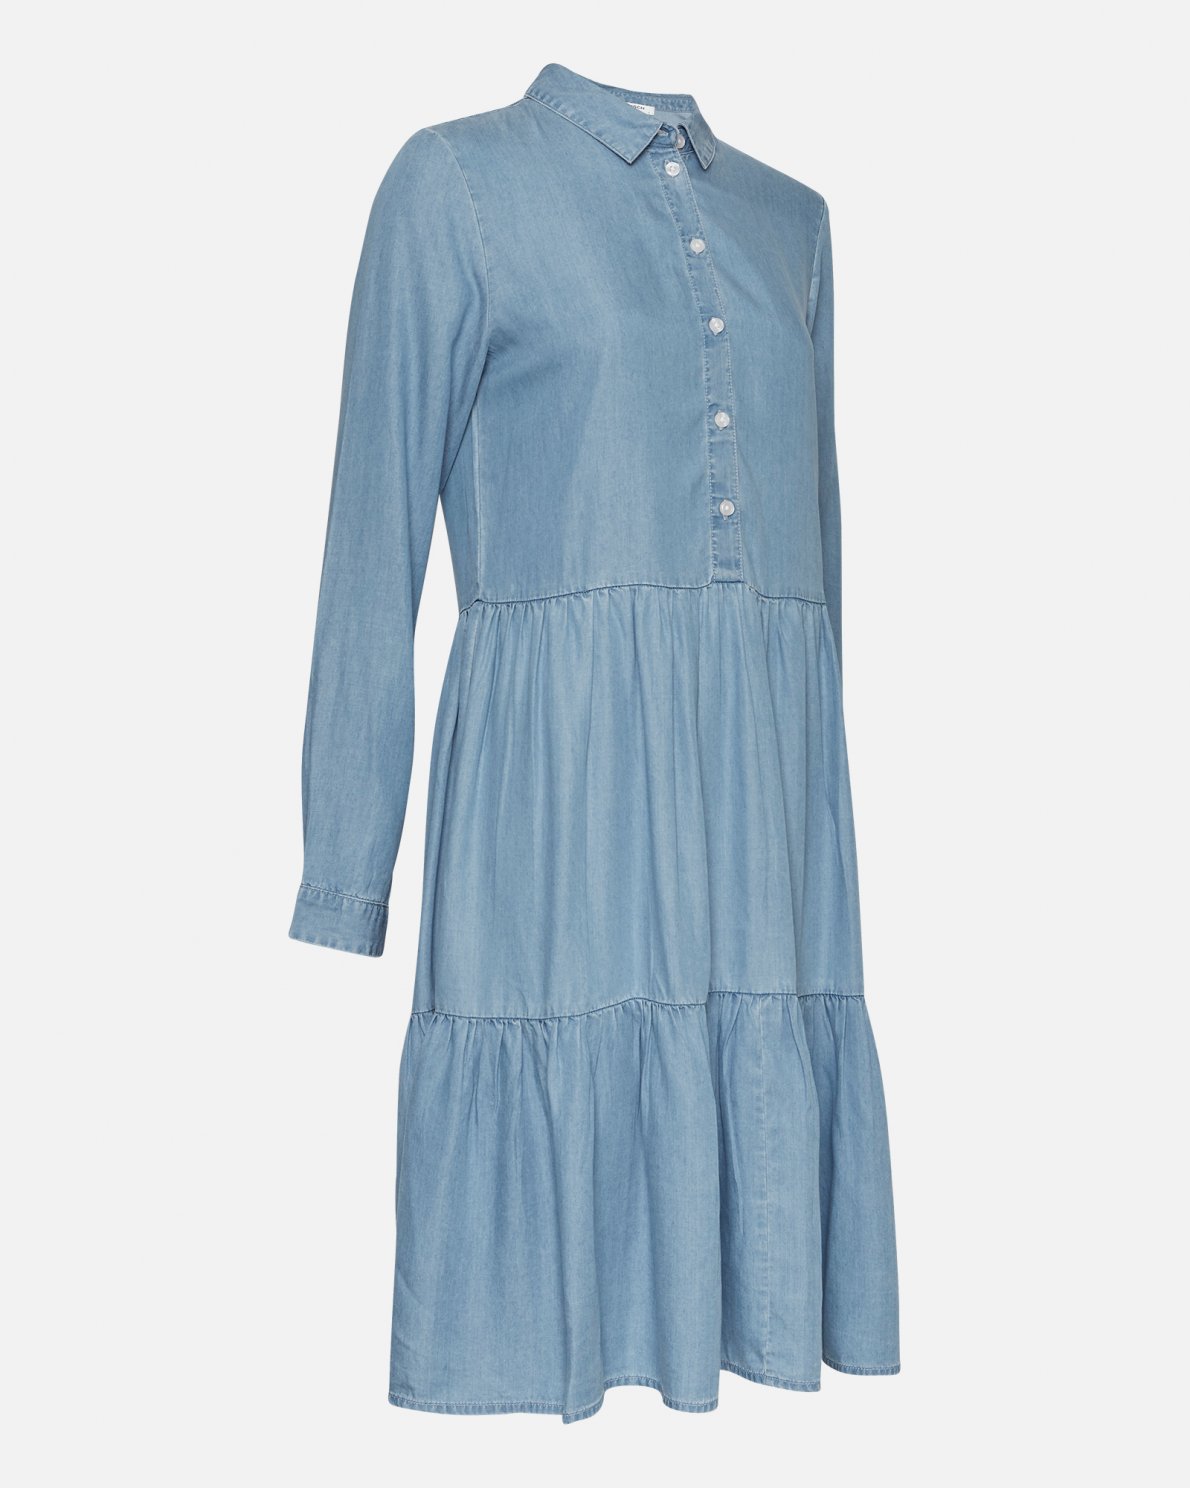 Philippa LS Shirt Dress - Blue Wash - Moss Copenhagen - Kjoler - VILLOID.no